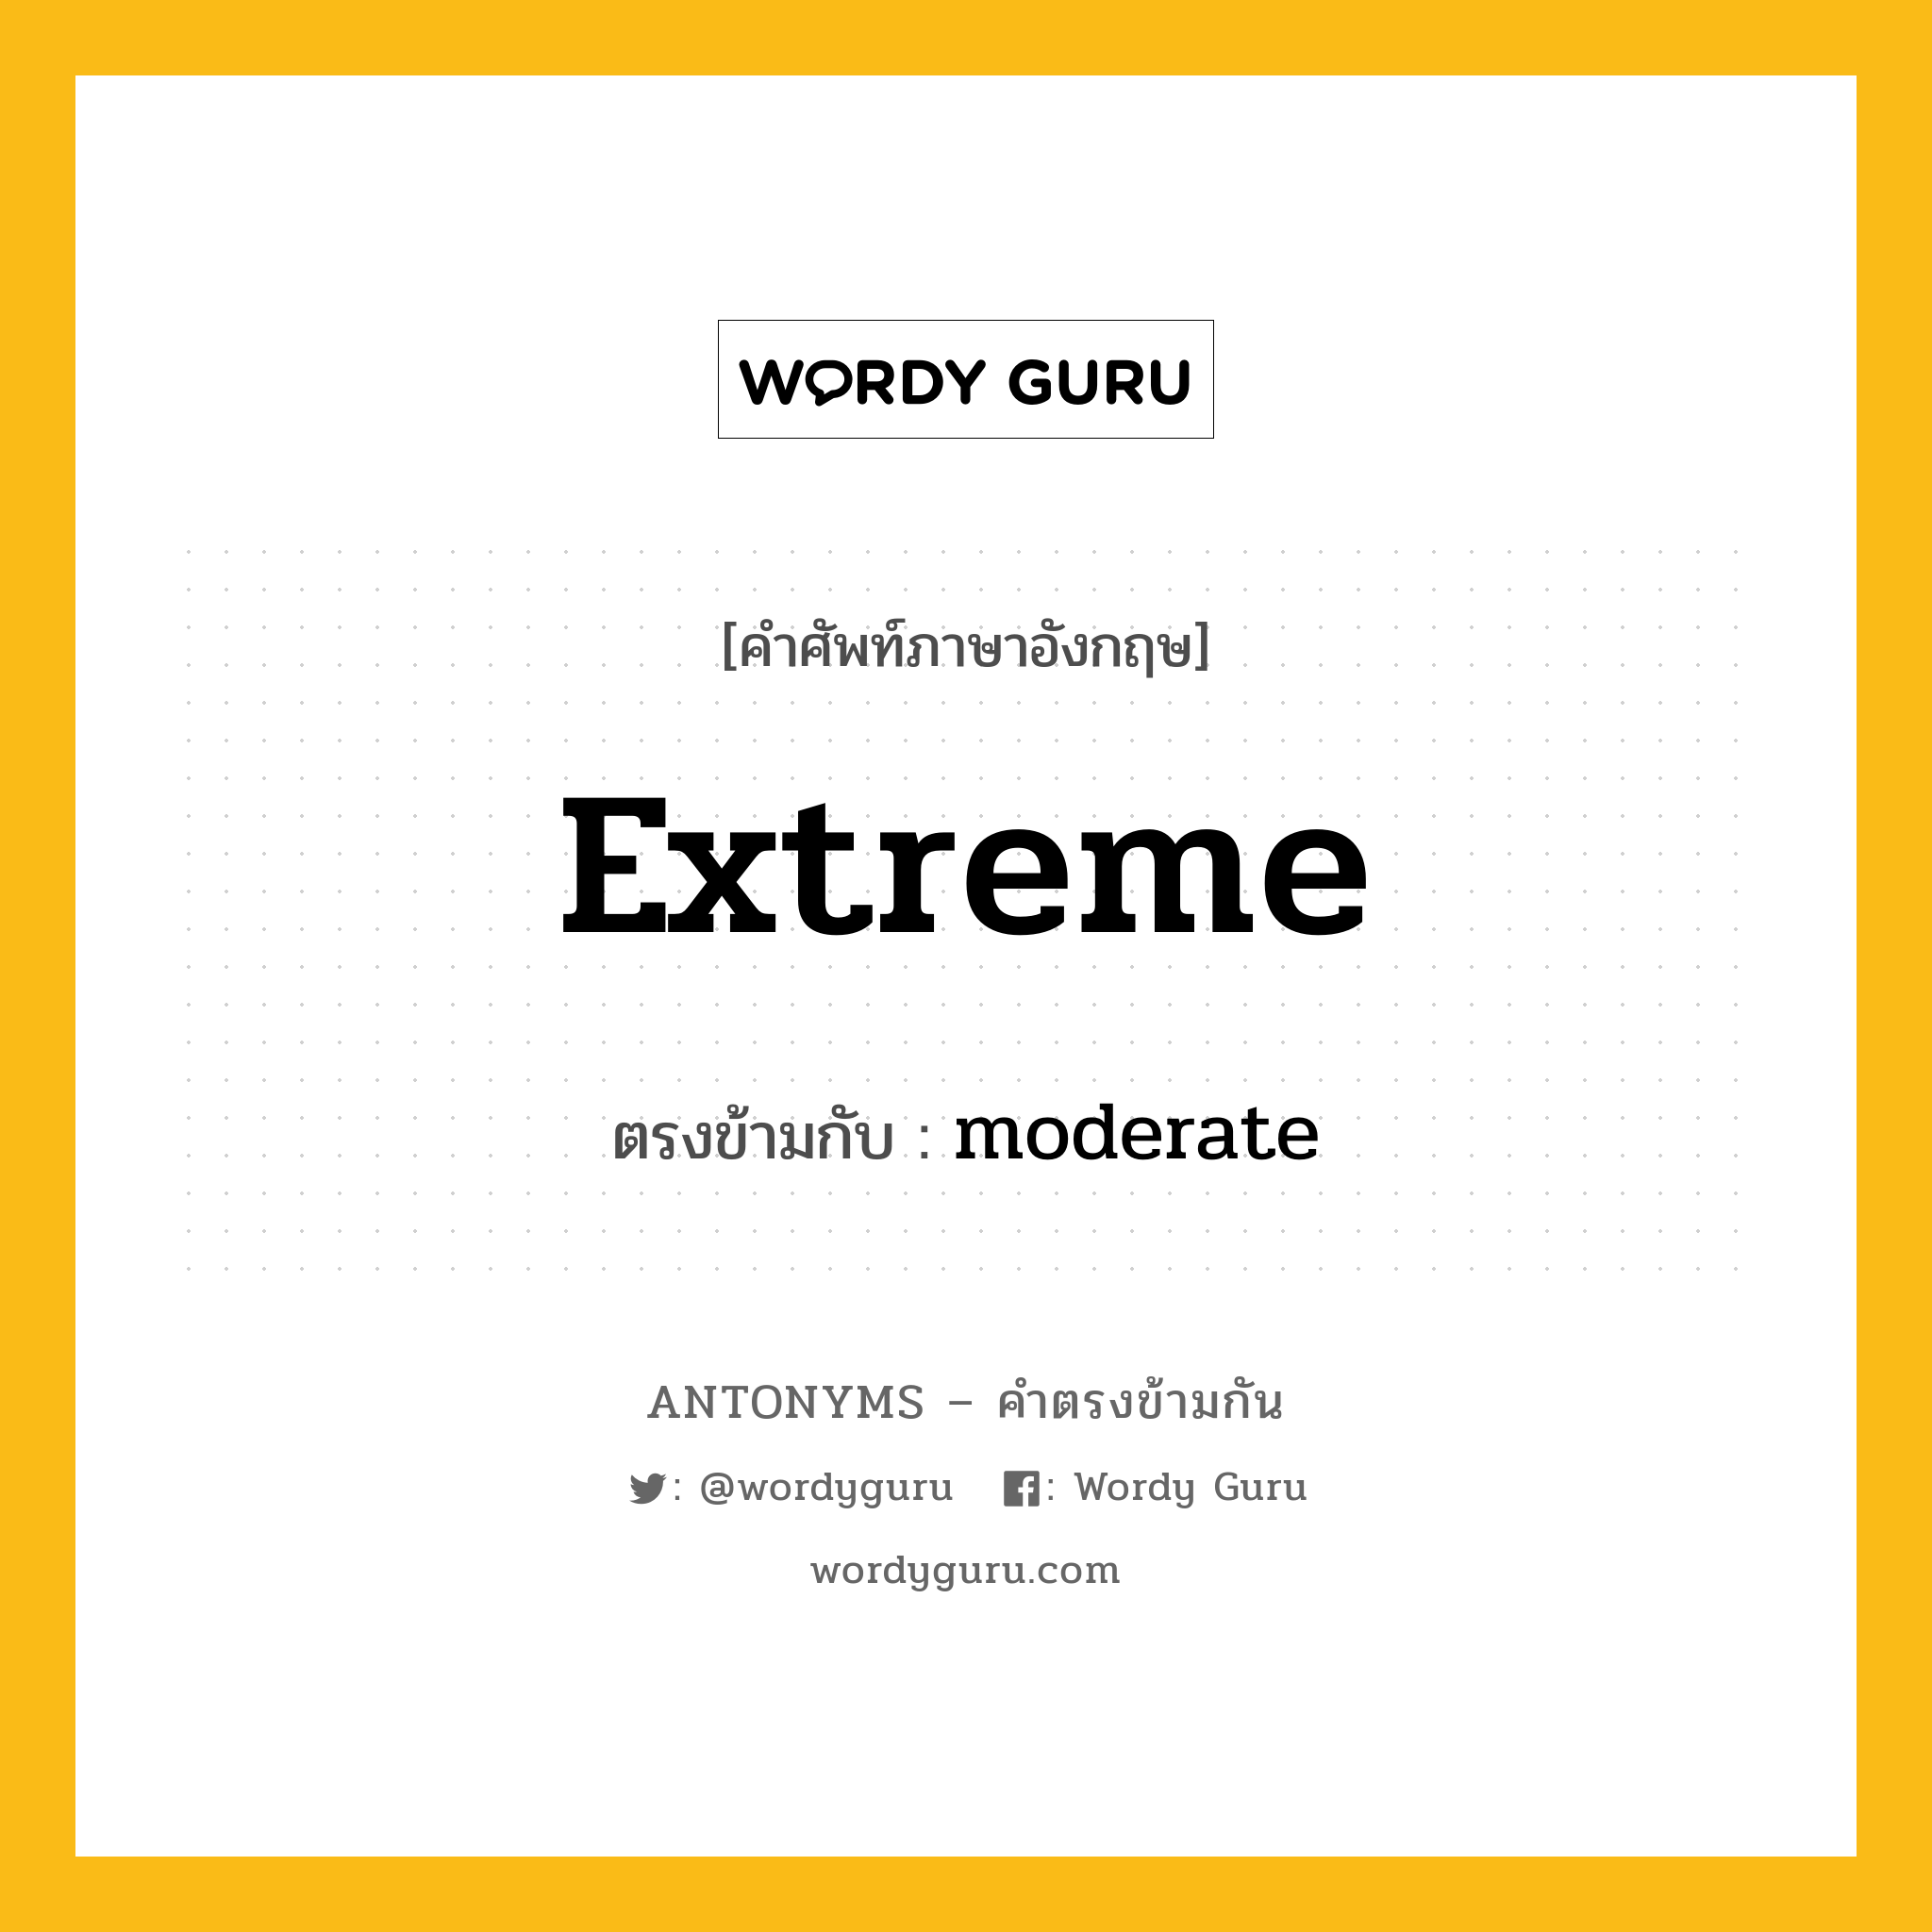 extreme เป็นคำตรงข้ามกับคำไหนบ้าง?, คำศัพท์ภาษาอังกฤษ extreme ตรงข้ามกับ moderate หมวด moderate